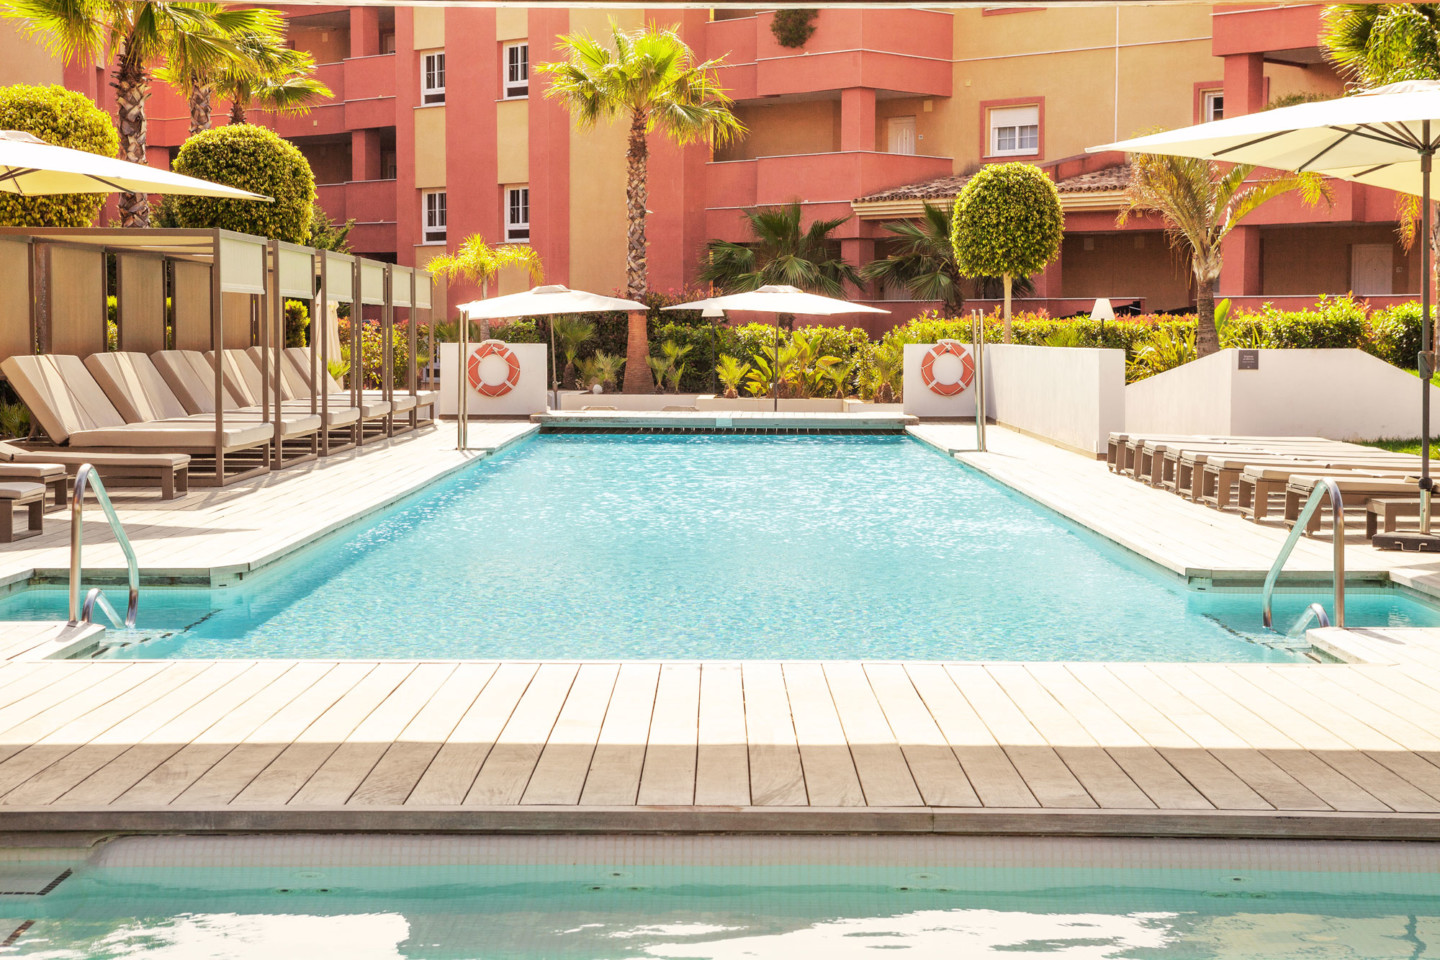 Ama Islantilla Resort 4*, Huelva | Official website